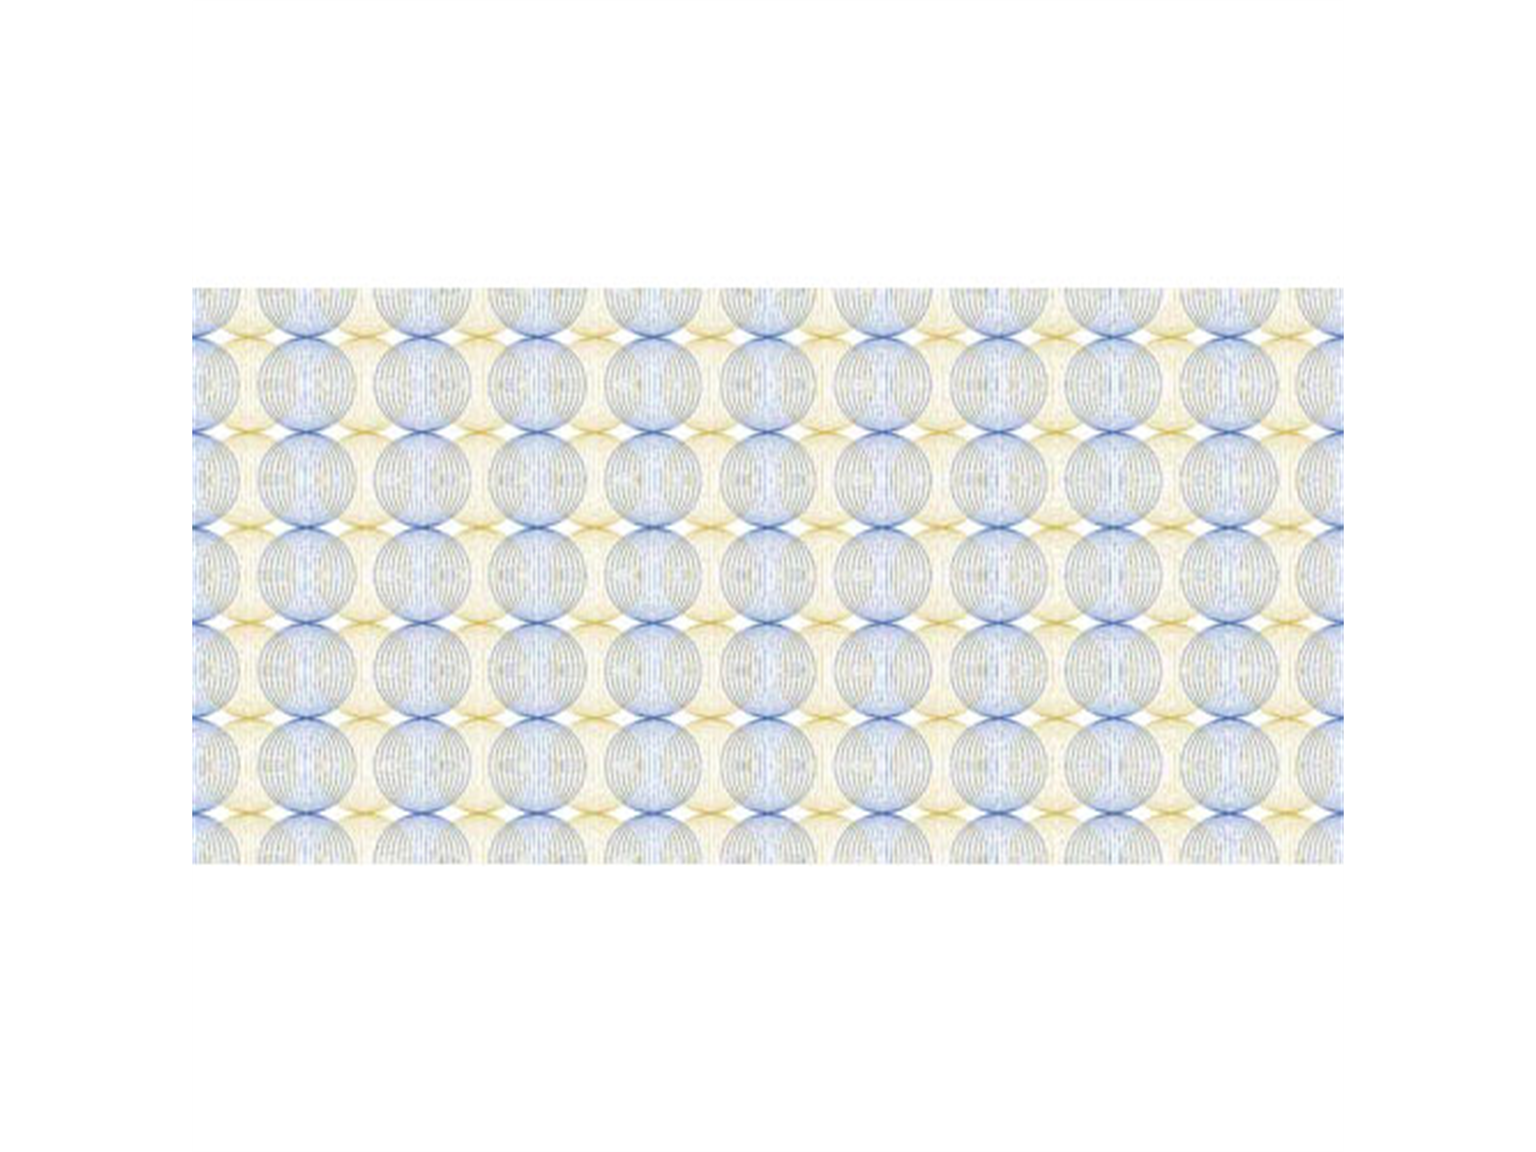 TISCHLAEUFER AIRLAID  40 cm breit x 24 lfm., Ludo (blau-gold)